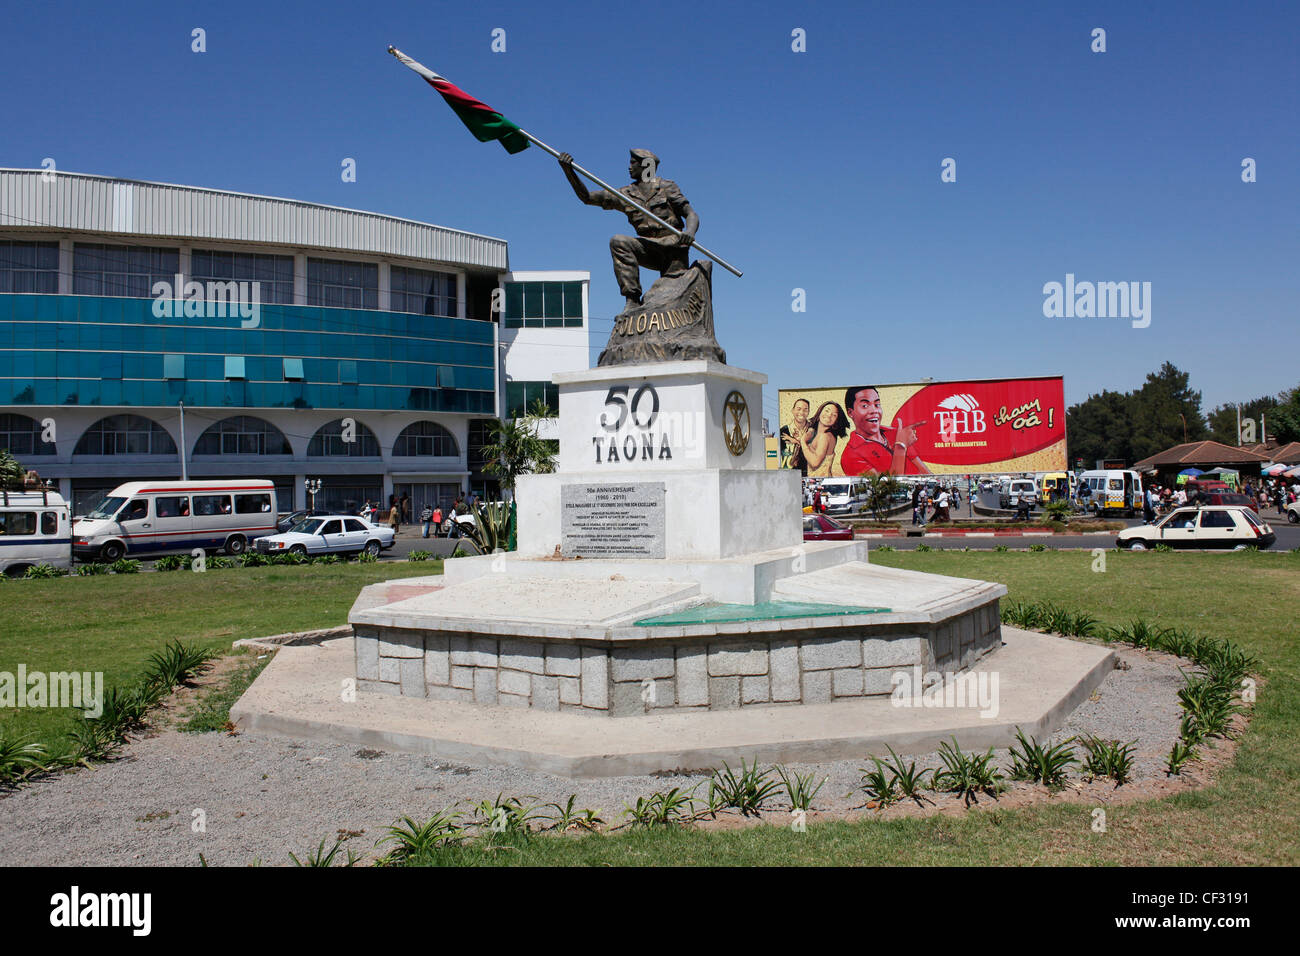 Statue im Zentrum Stadt um 50 Jahre Unabhängigkeit 1960-2010 zu gedenken. 50 Taona, Antananarivo. Madagaskar. Stockfoto